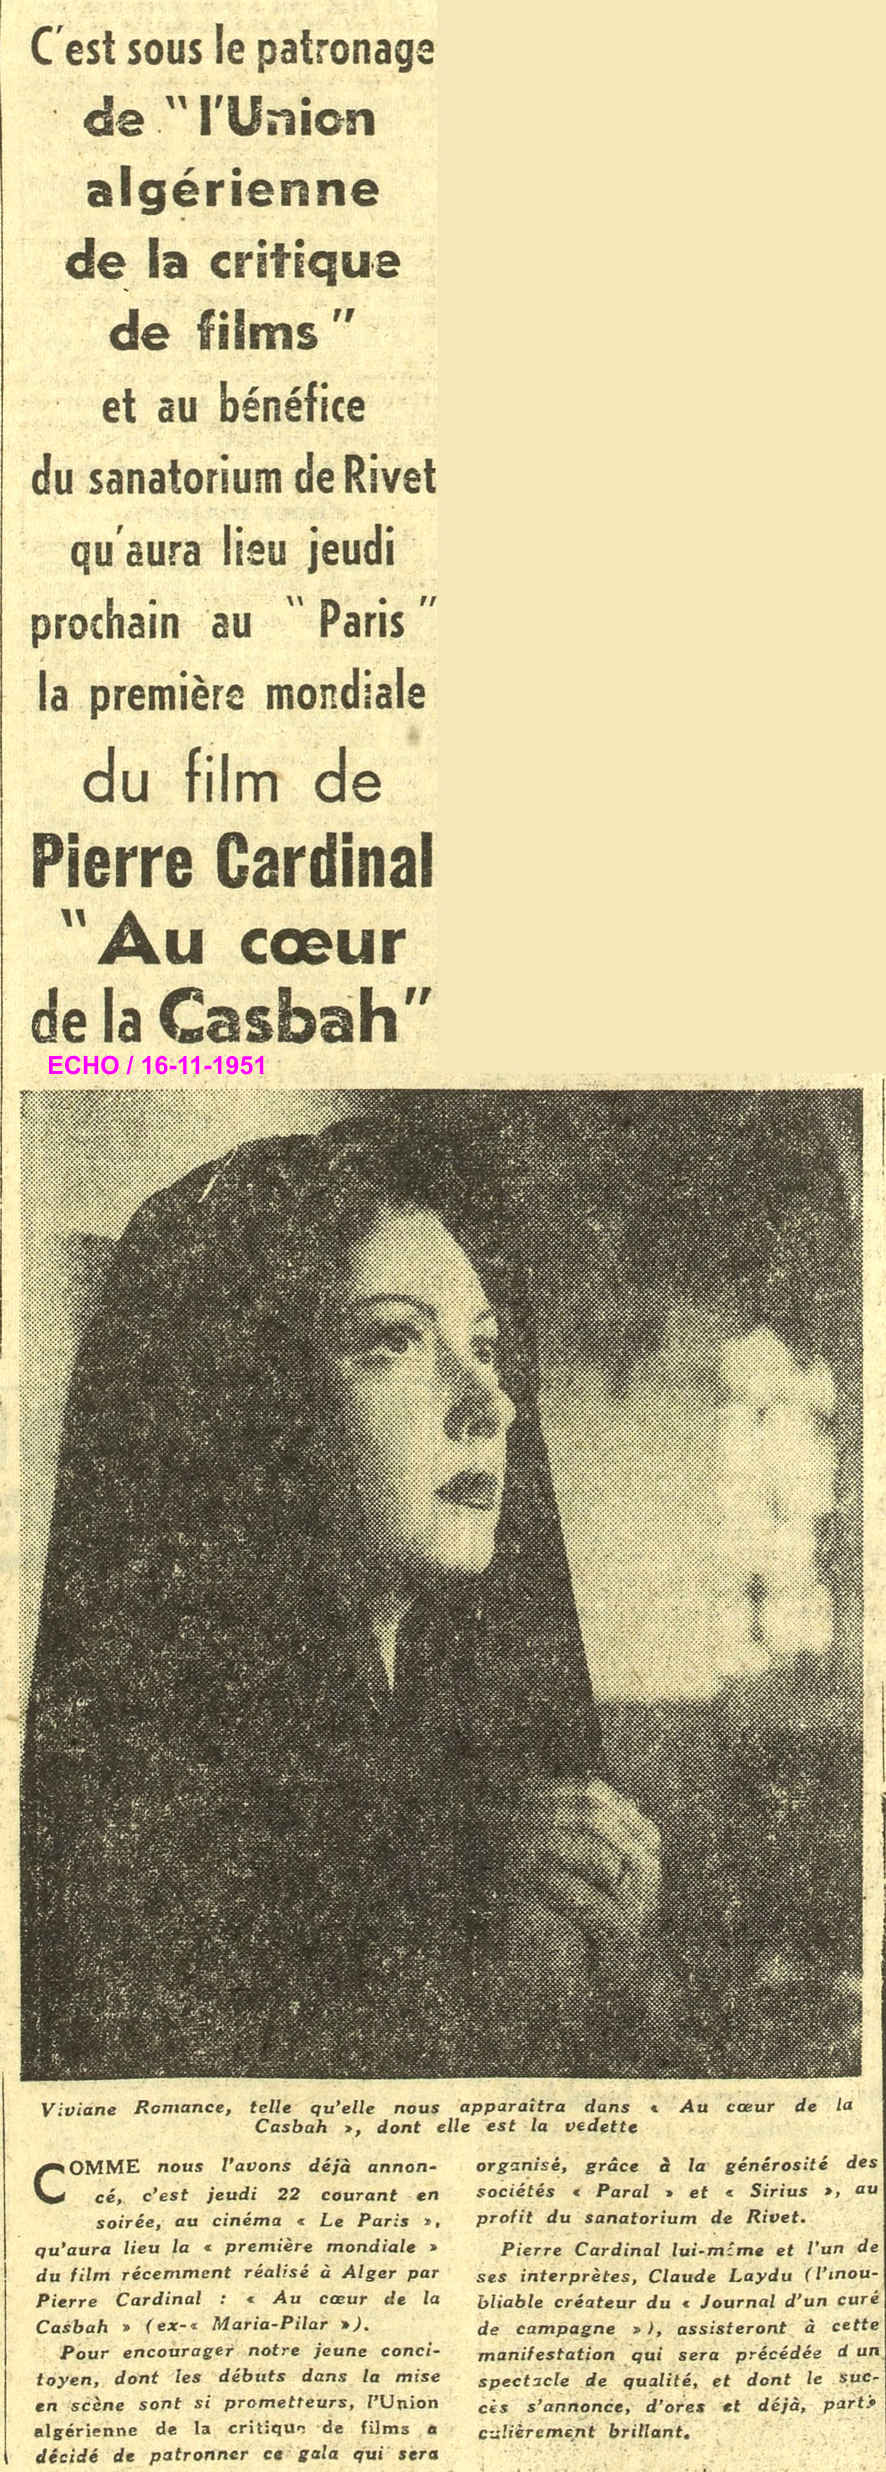 la première mondiale du film de Pierre Cardinal " Au cœur de la Casbah " 